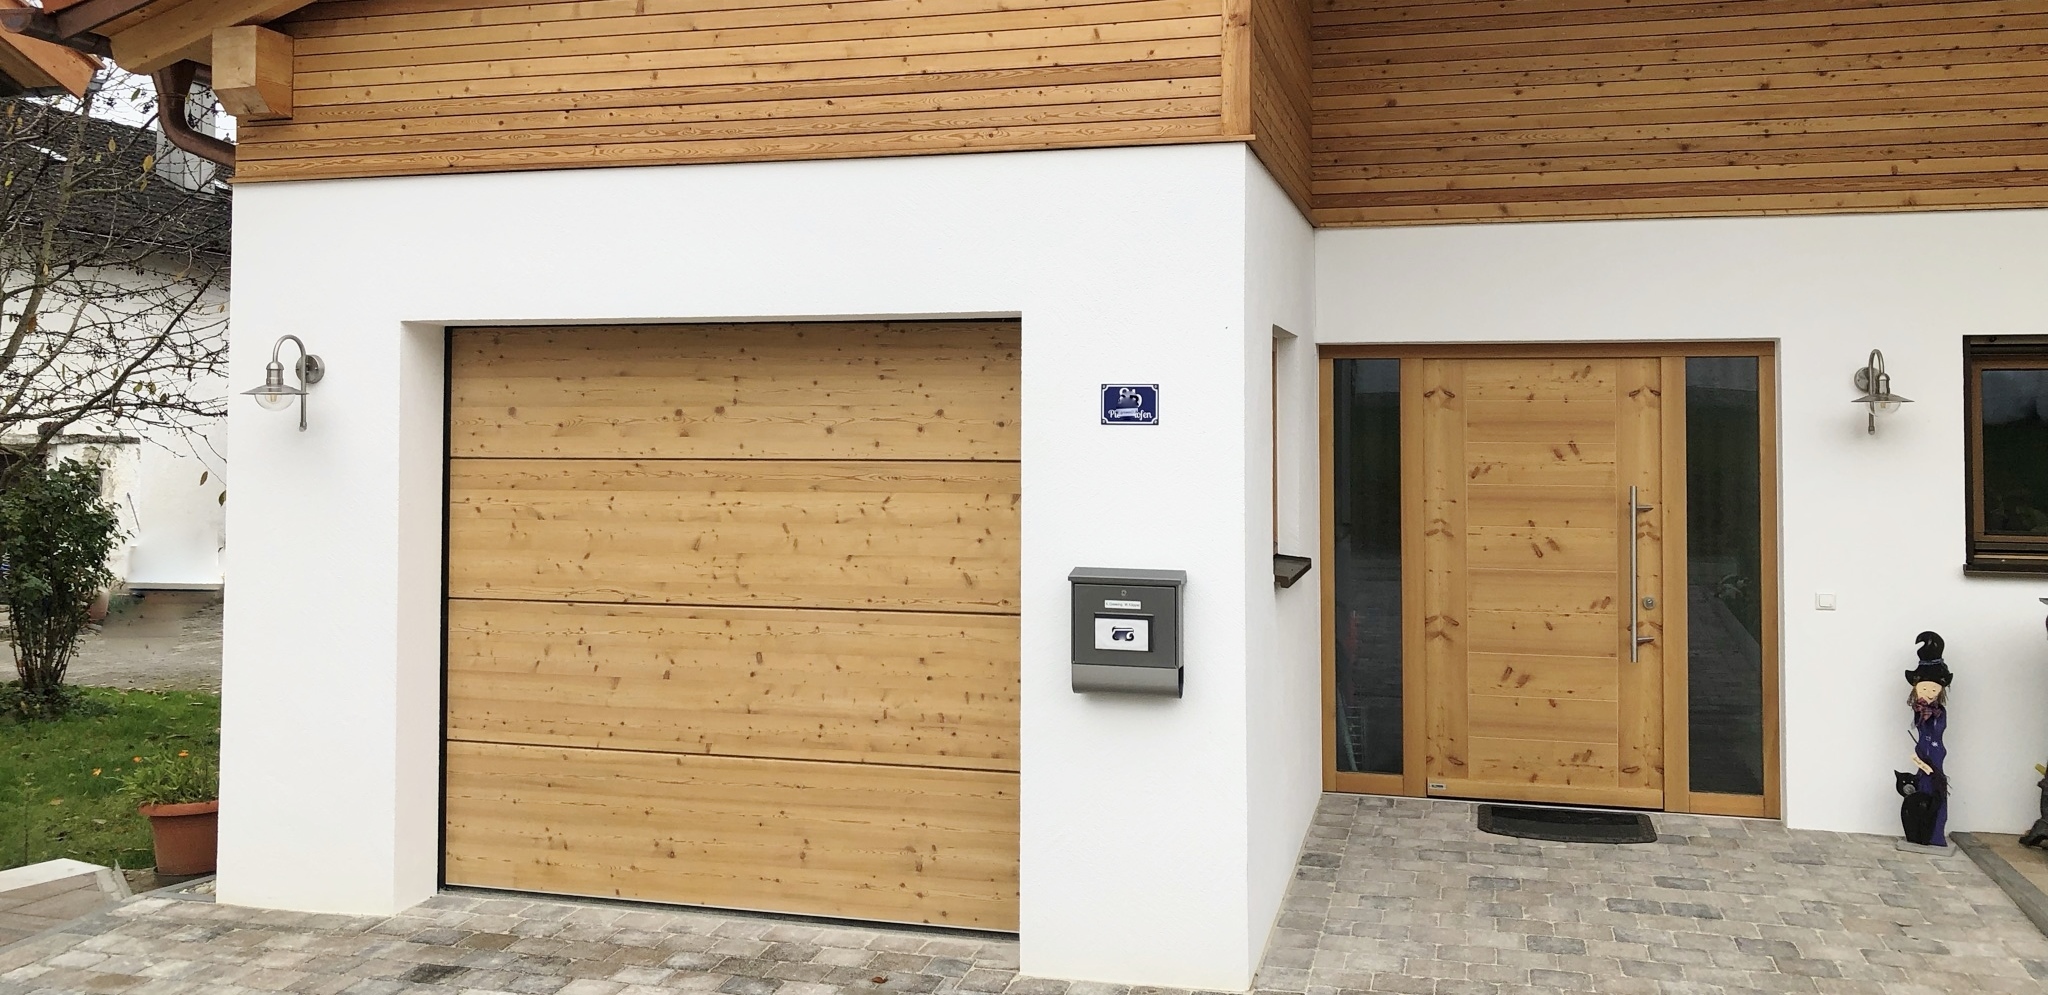 Holz-Sektionaltor und Eingangstür in Lärche.JPEG